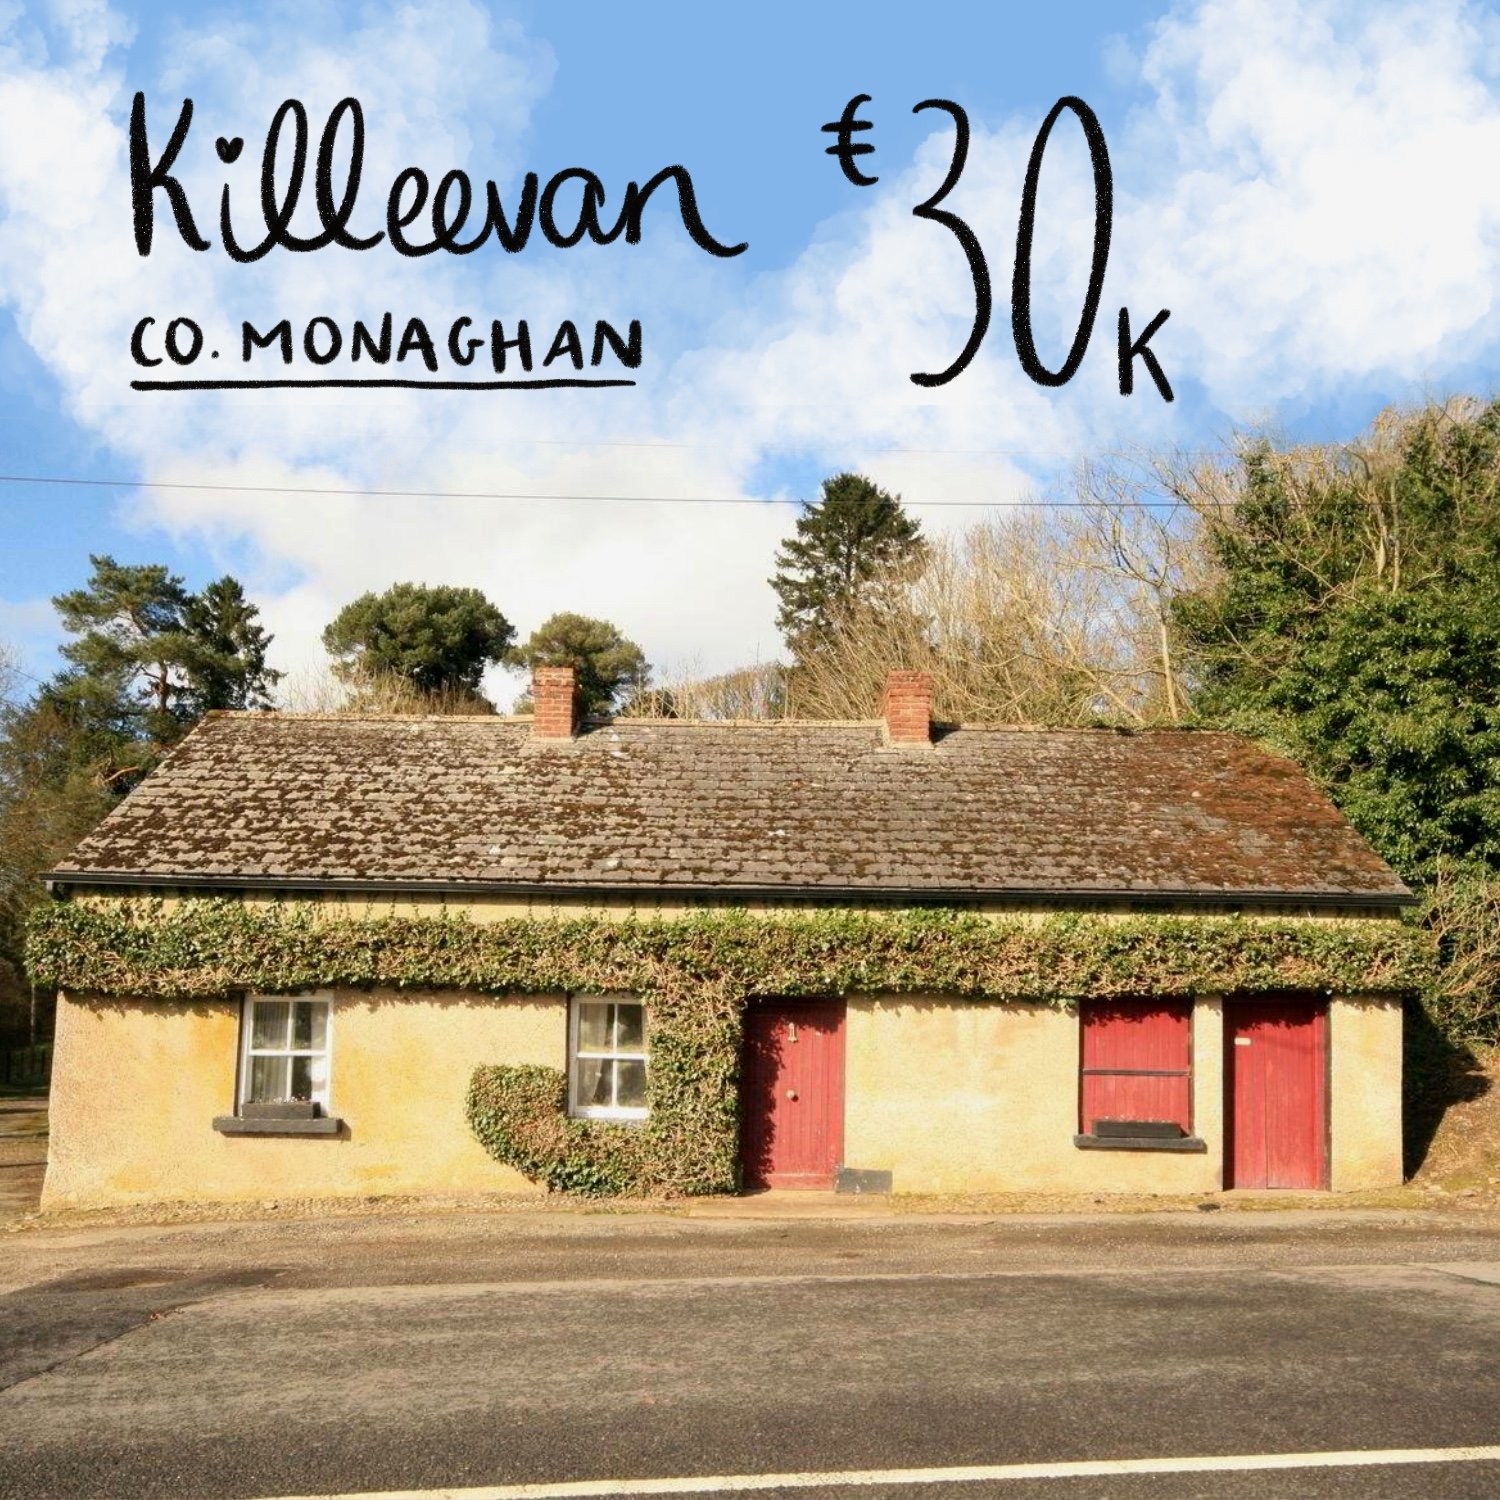 Killeevan, Co. Monaghan. €30k